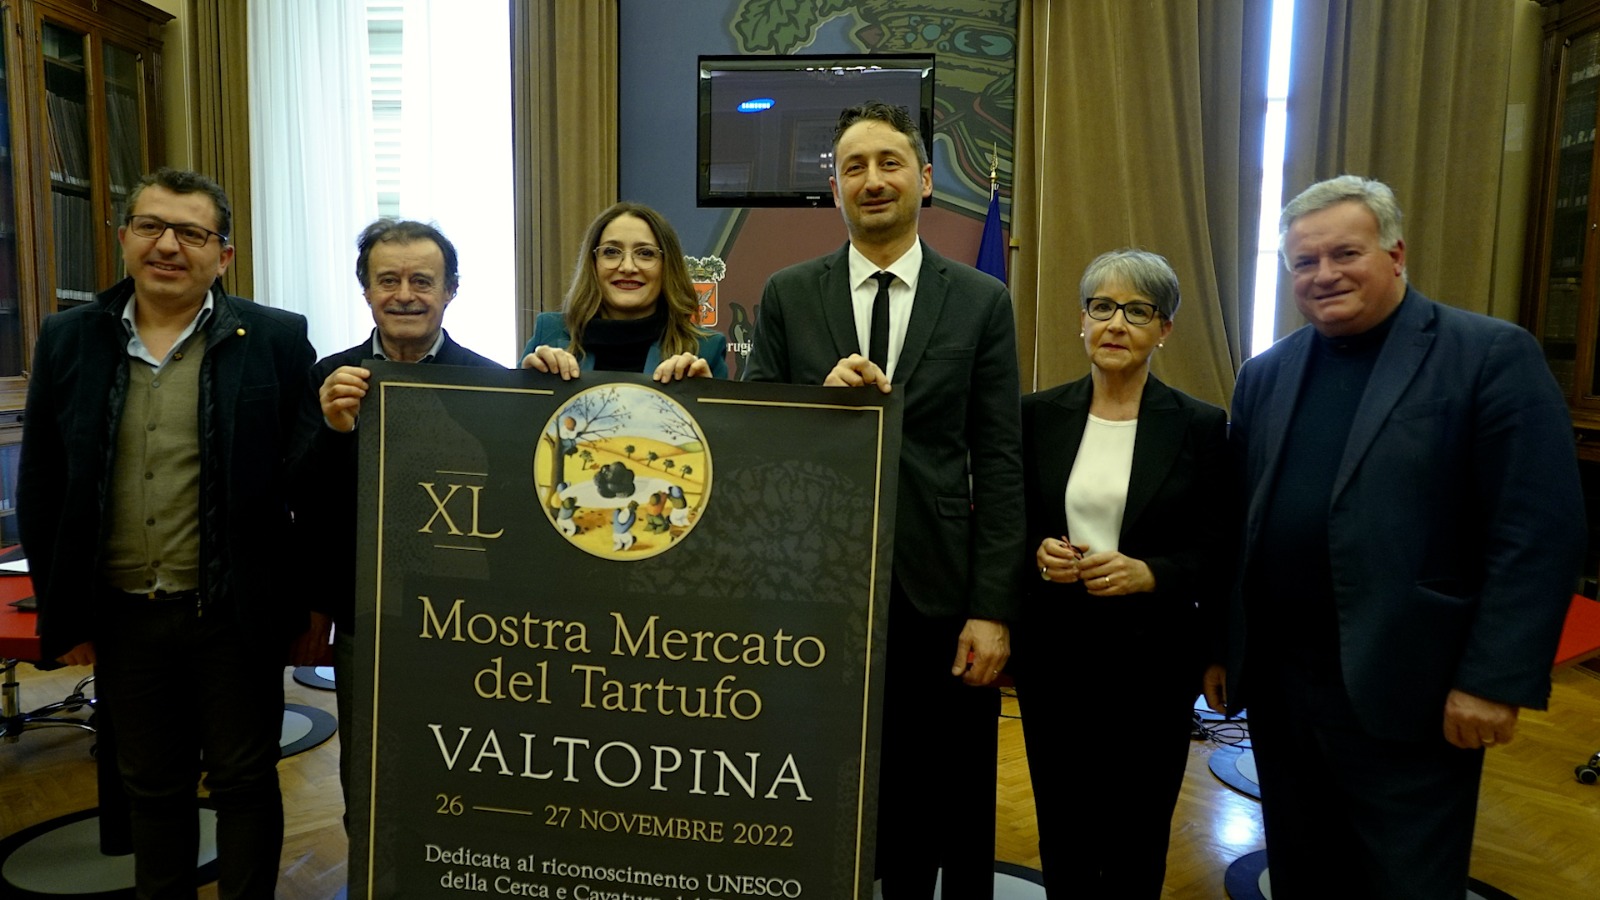 Valtopina – La Mostra Mercato del Tartufo dedica i suoi 40 anni al riconoscimento Unesco